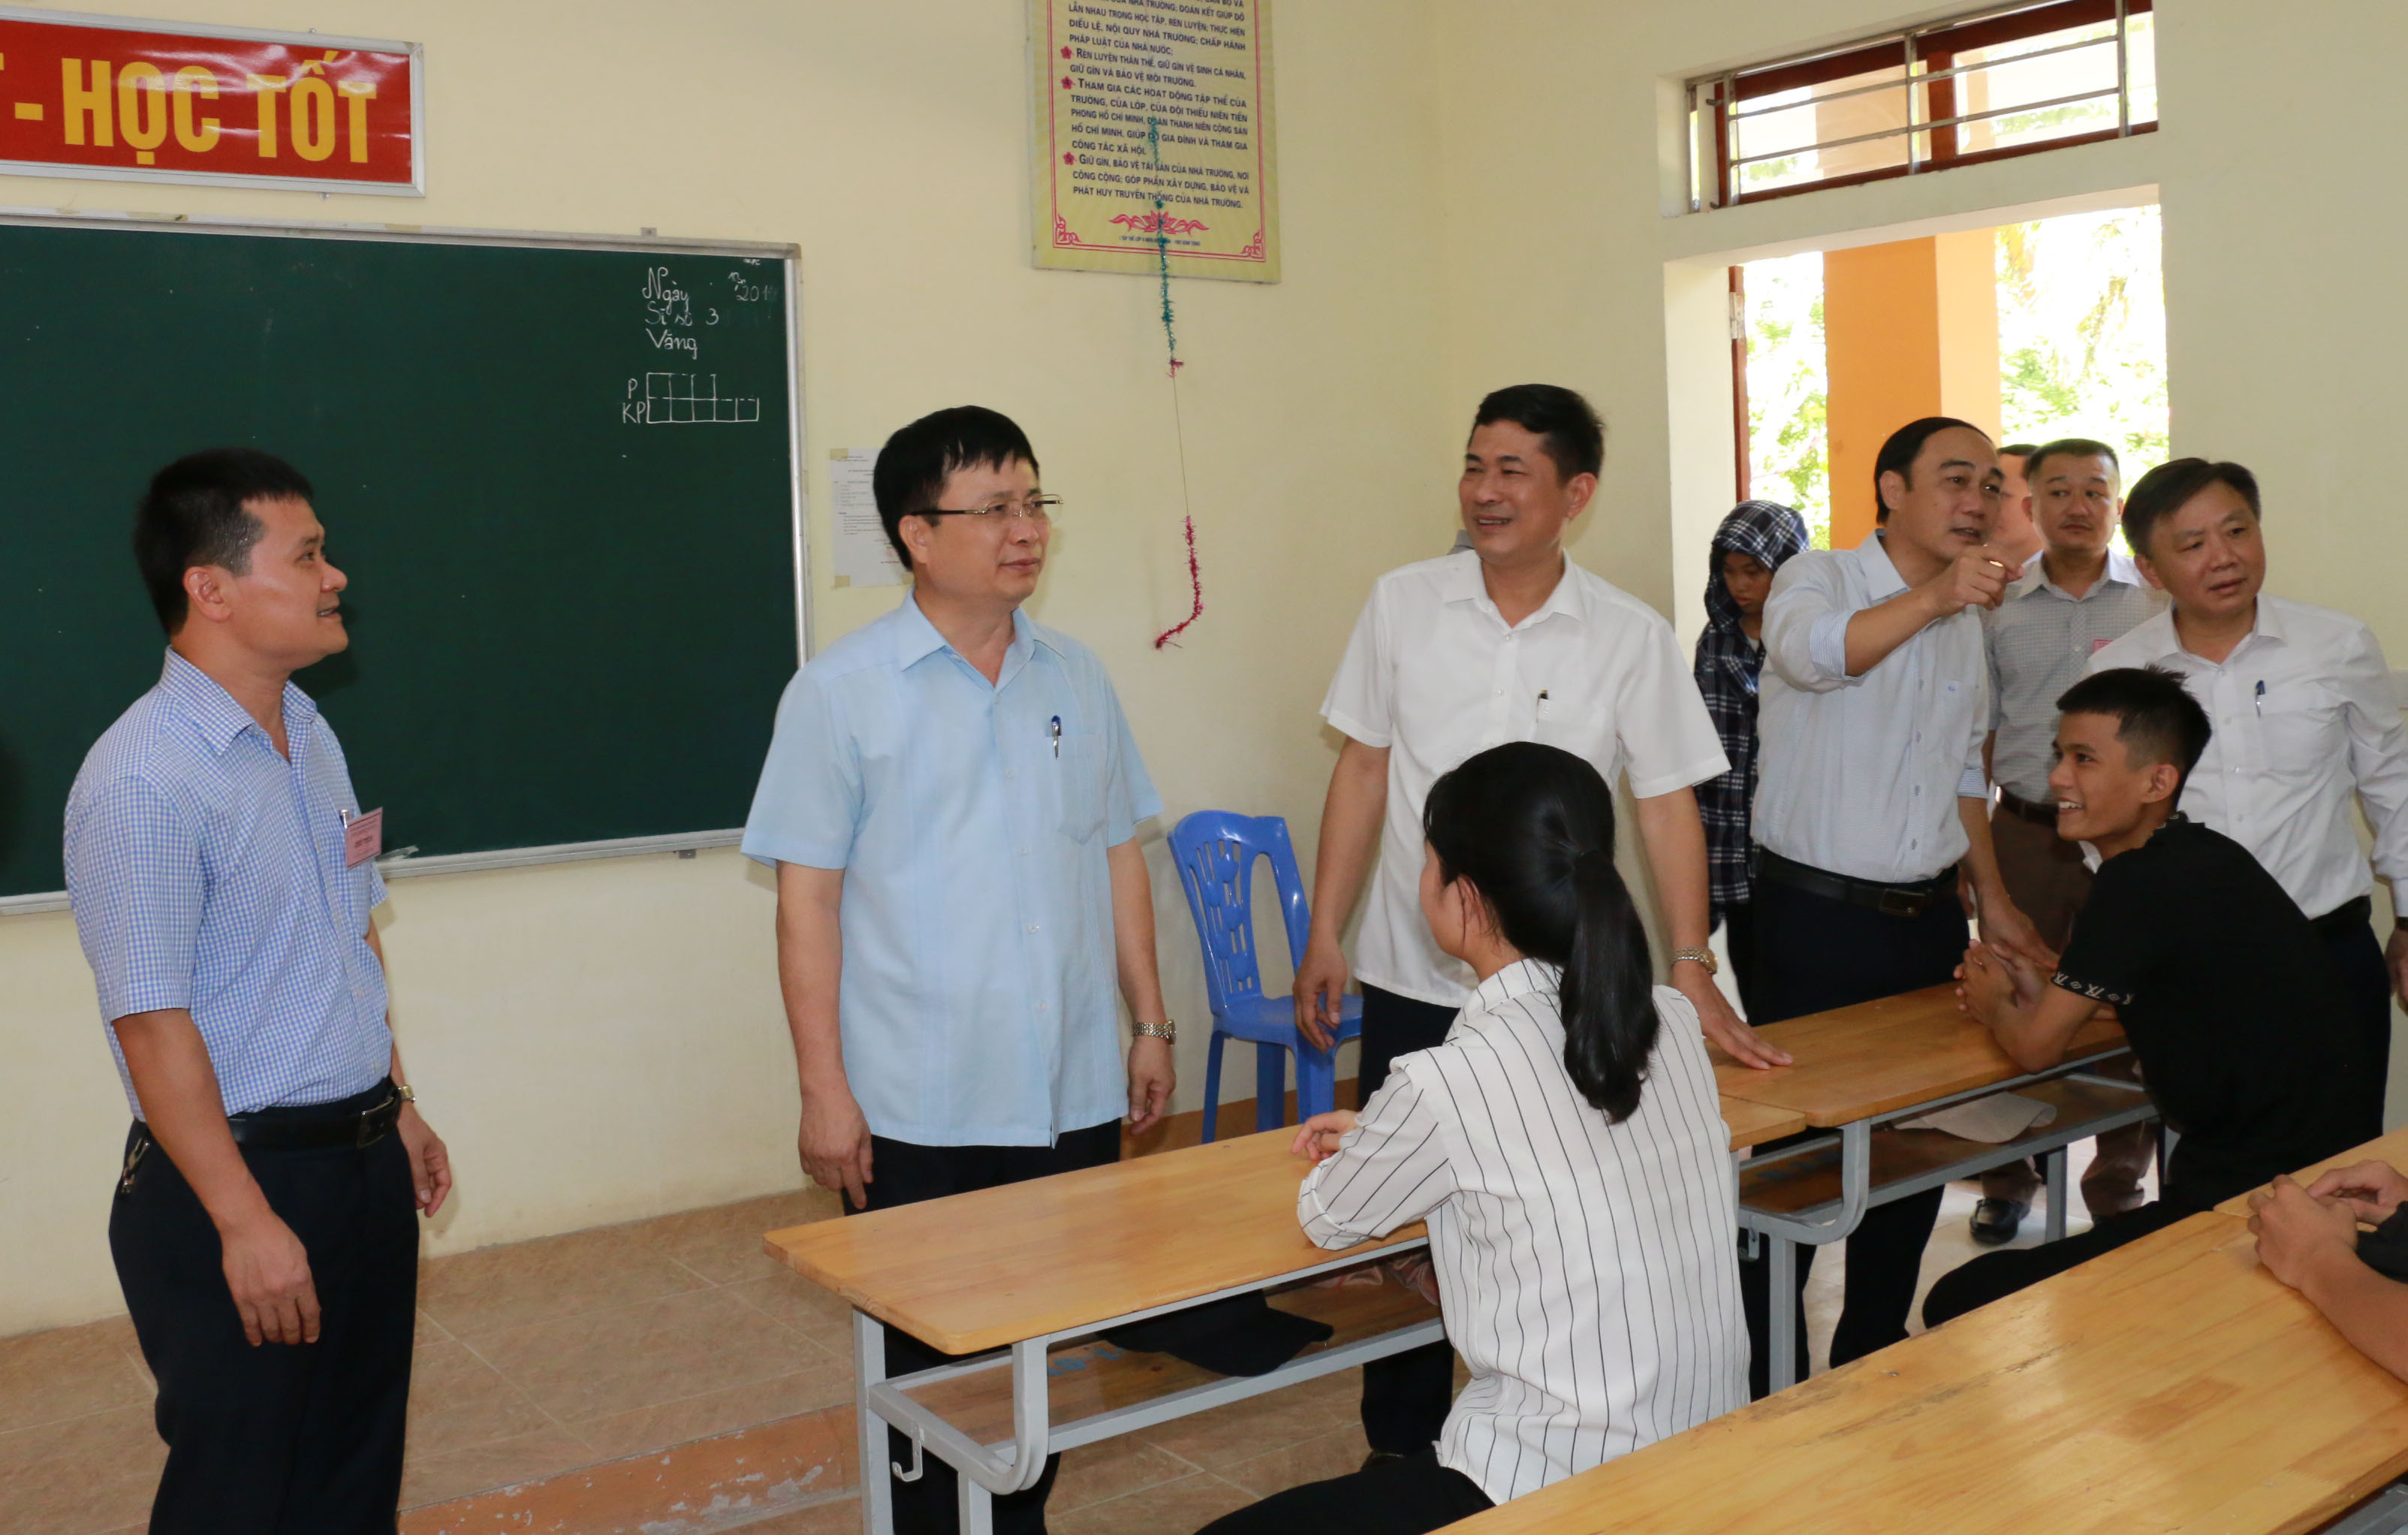 Đồng chí Bùi Đình Long và các thành viên trong đoàn động viên các thí sinh tại điểm thi Trường THPT Nam Đàn 2. Ảnh: Mỹ Hà